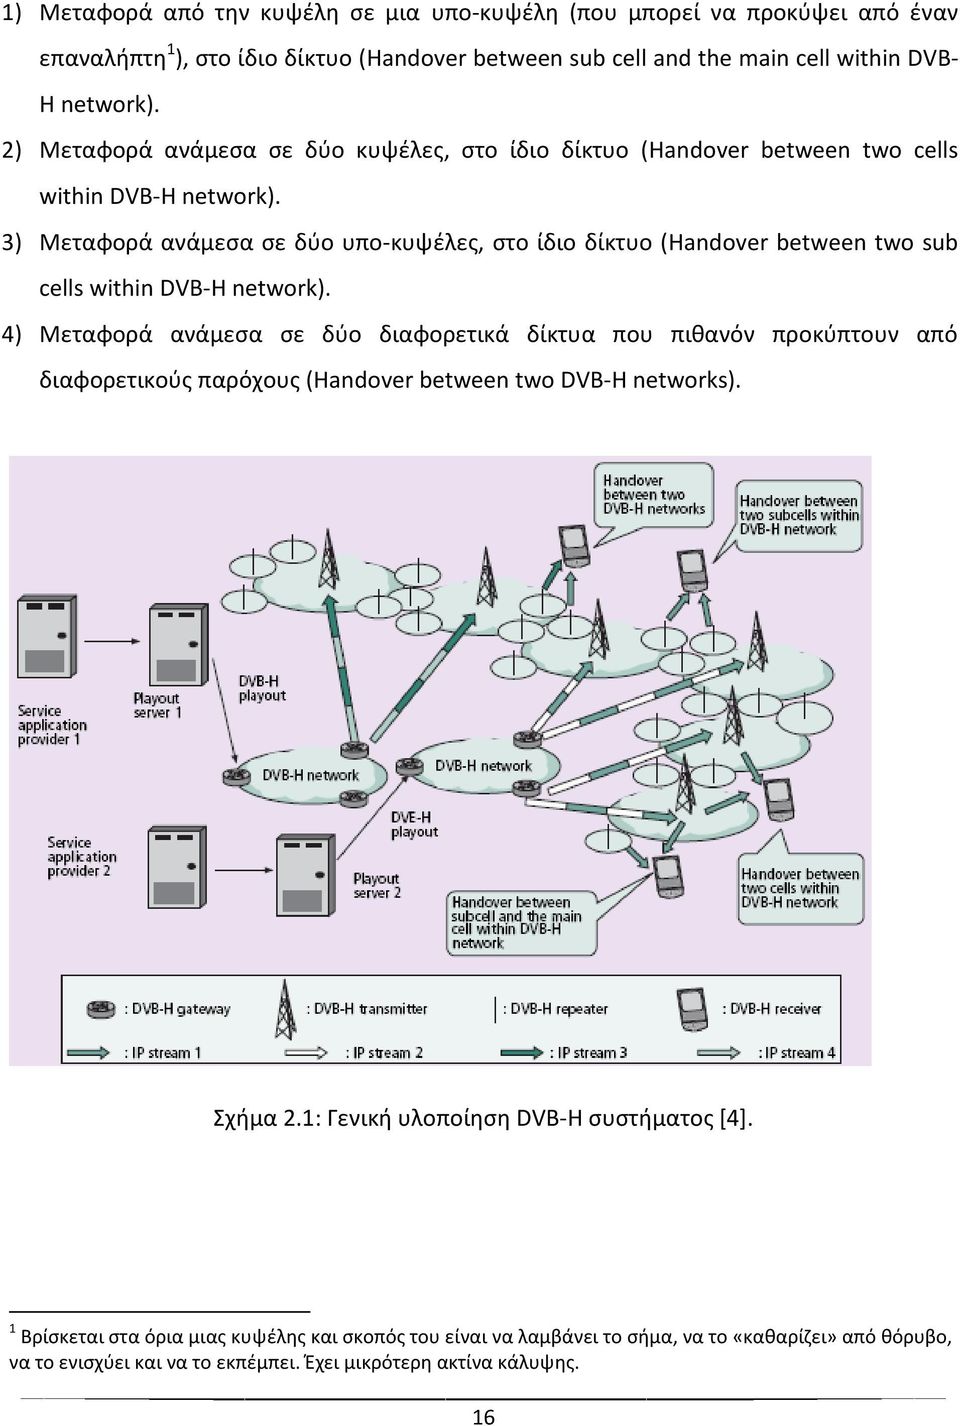 3) Μεταφορά ανάμεςα ςε δφο υπο-κυψζλεσ, ςτο ίδιο δίκτυο (Handover between two sub cells within DVB-H network).